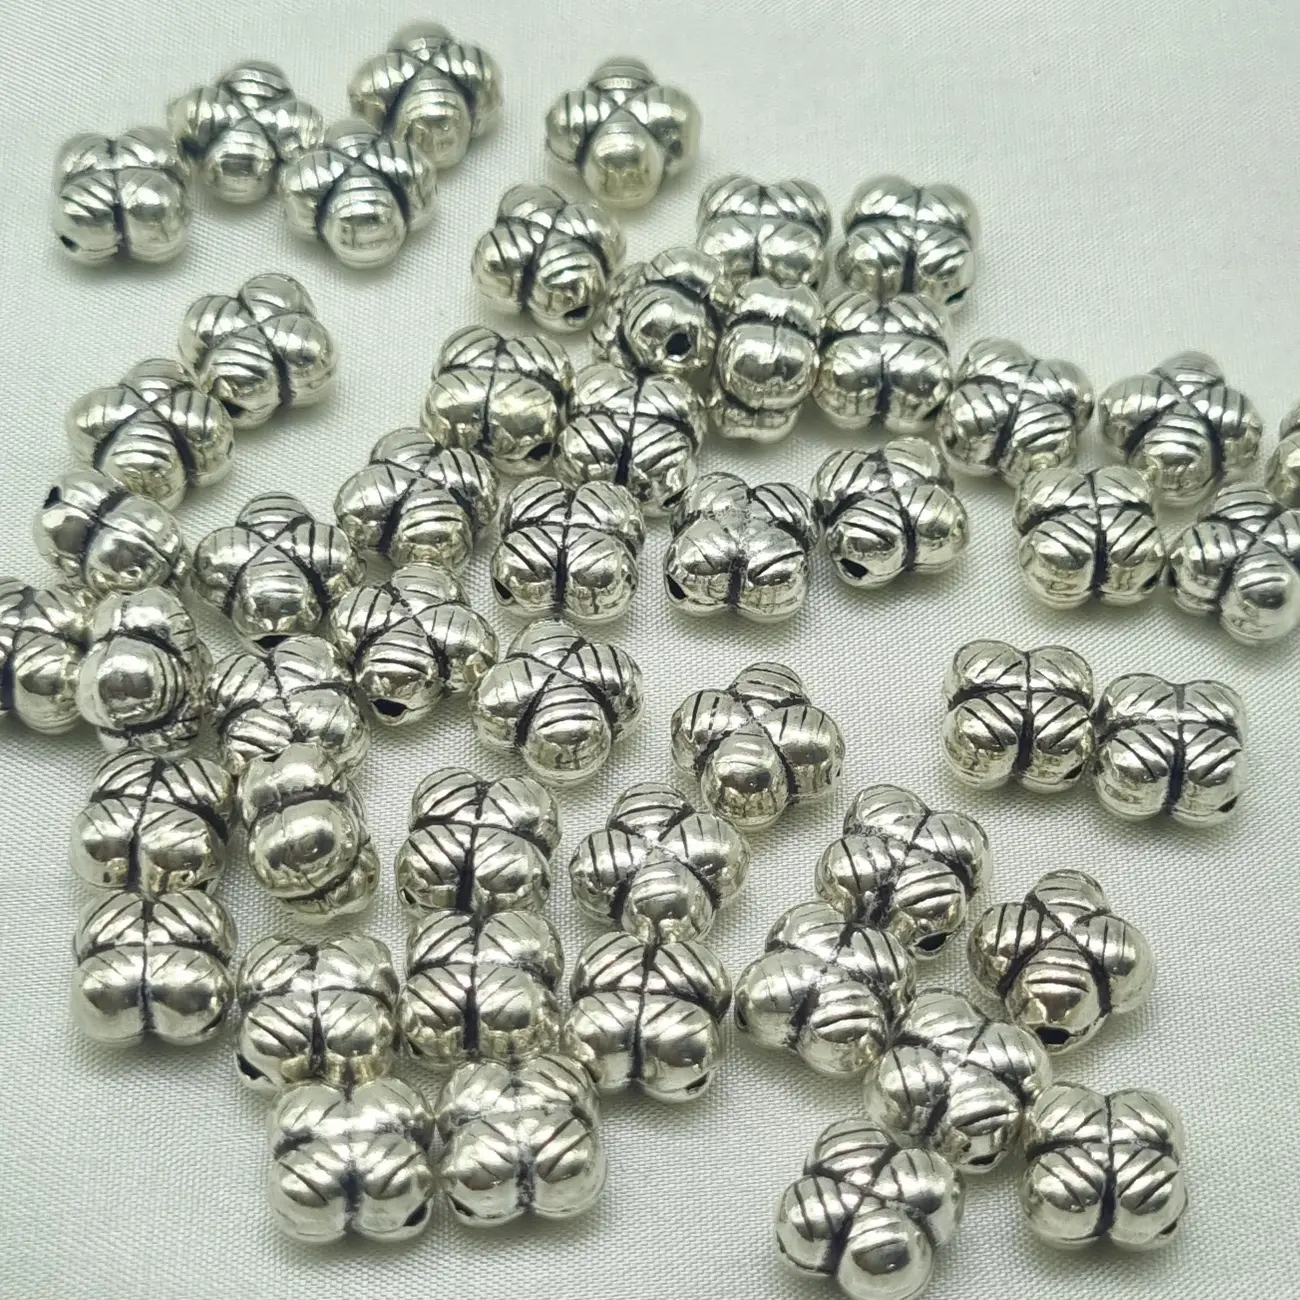 Cuentas de plata esterlina 925 para hacer joyas al por mayor al mejor precio para diseñar, pulseras, dijes, regalos para ella